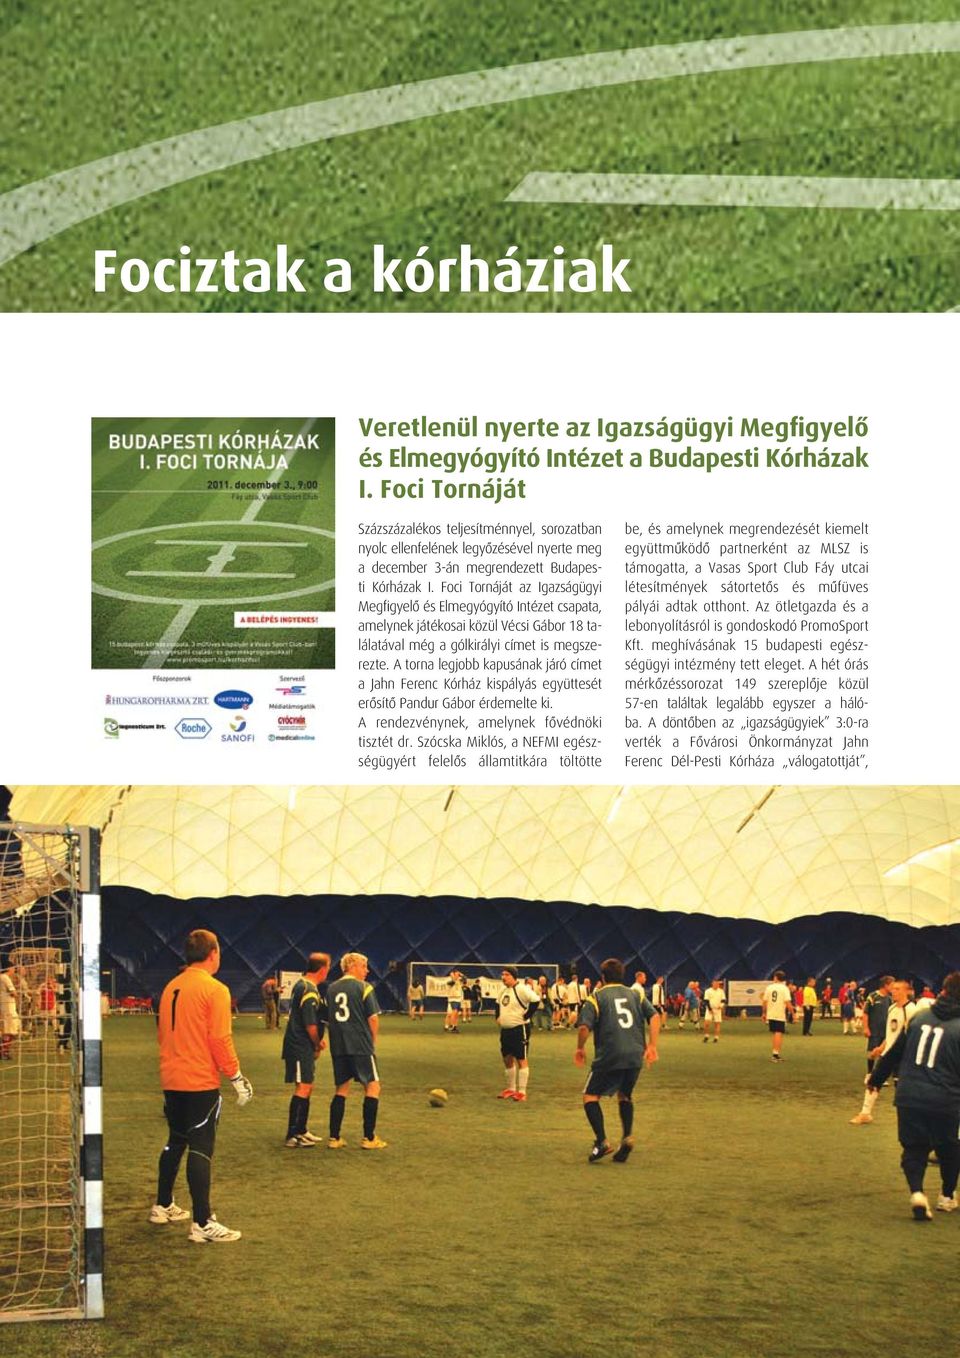 Foci Tornáját az Igazságügyi Megfigyelô és Elmegyógyító Intézet csapata, amelynek játékosai közül Vécsi Gábor 18 találatával még a gólkirályi címet is megszerezte.